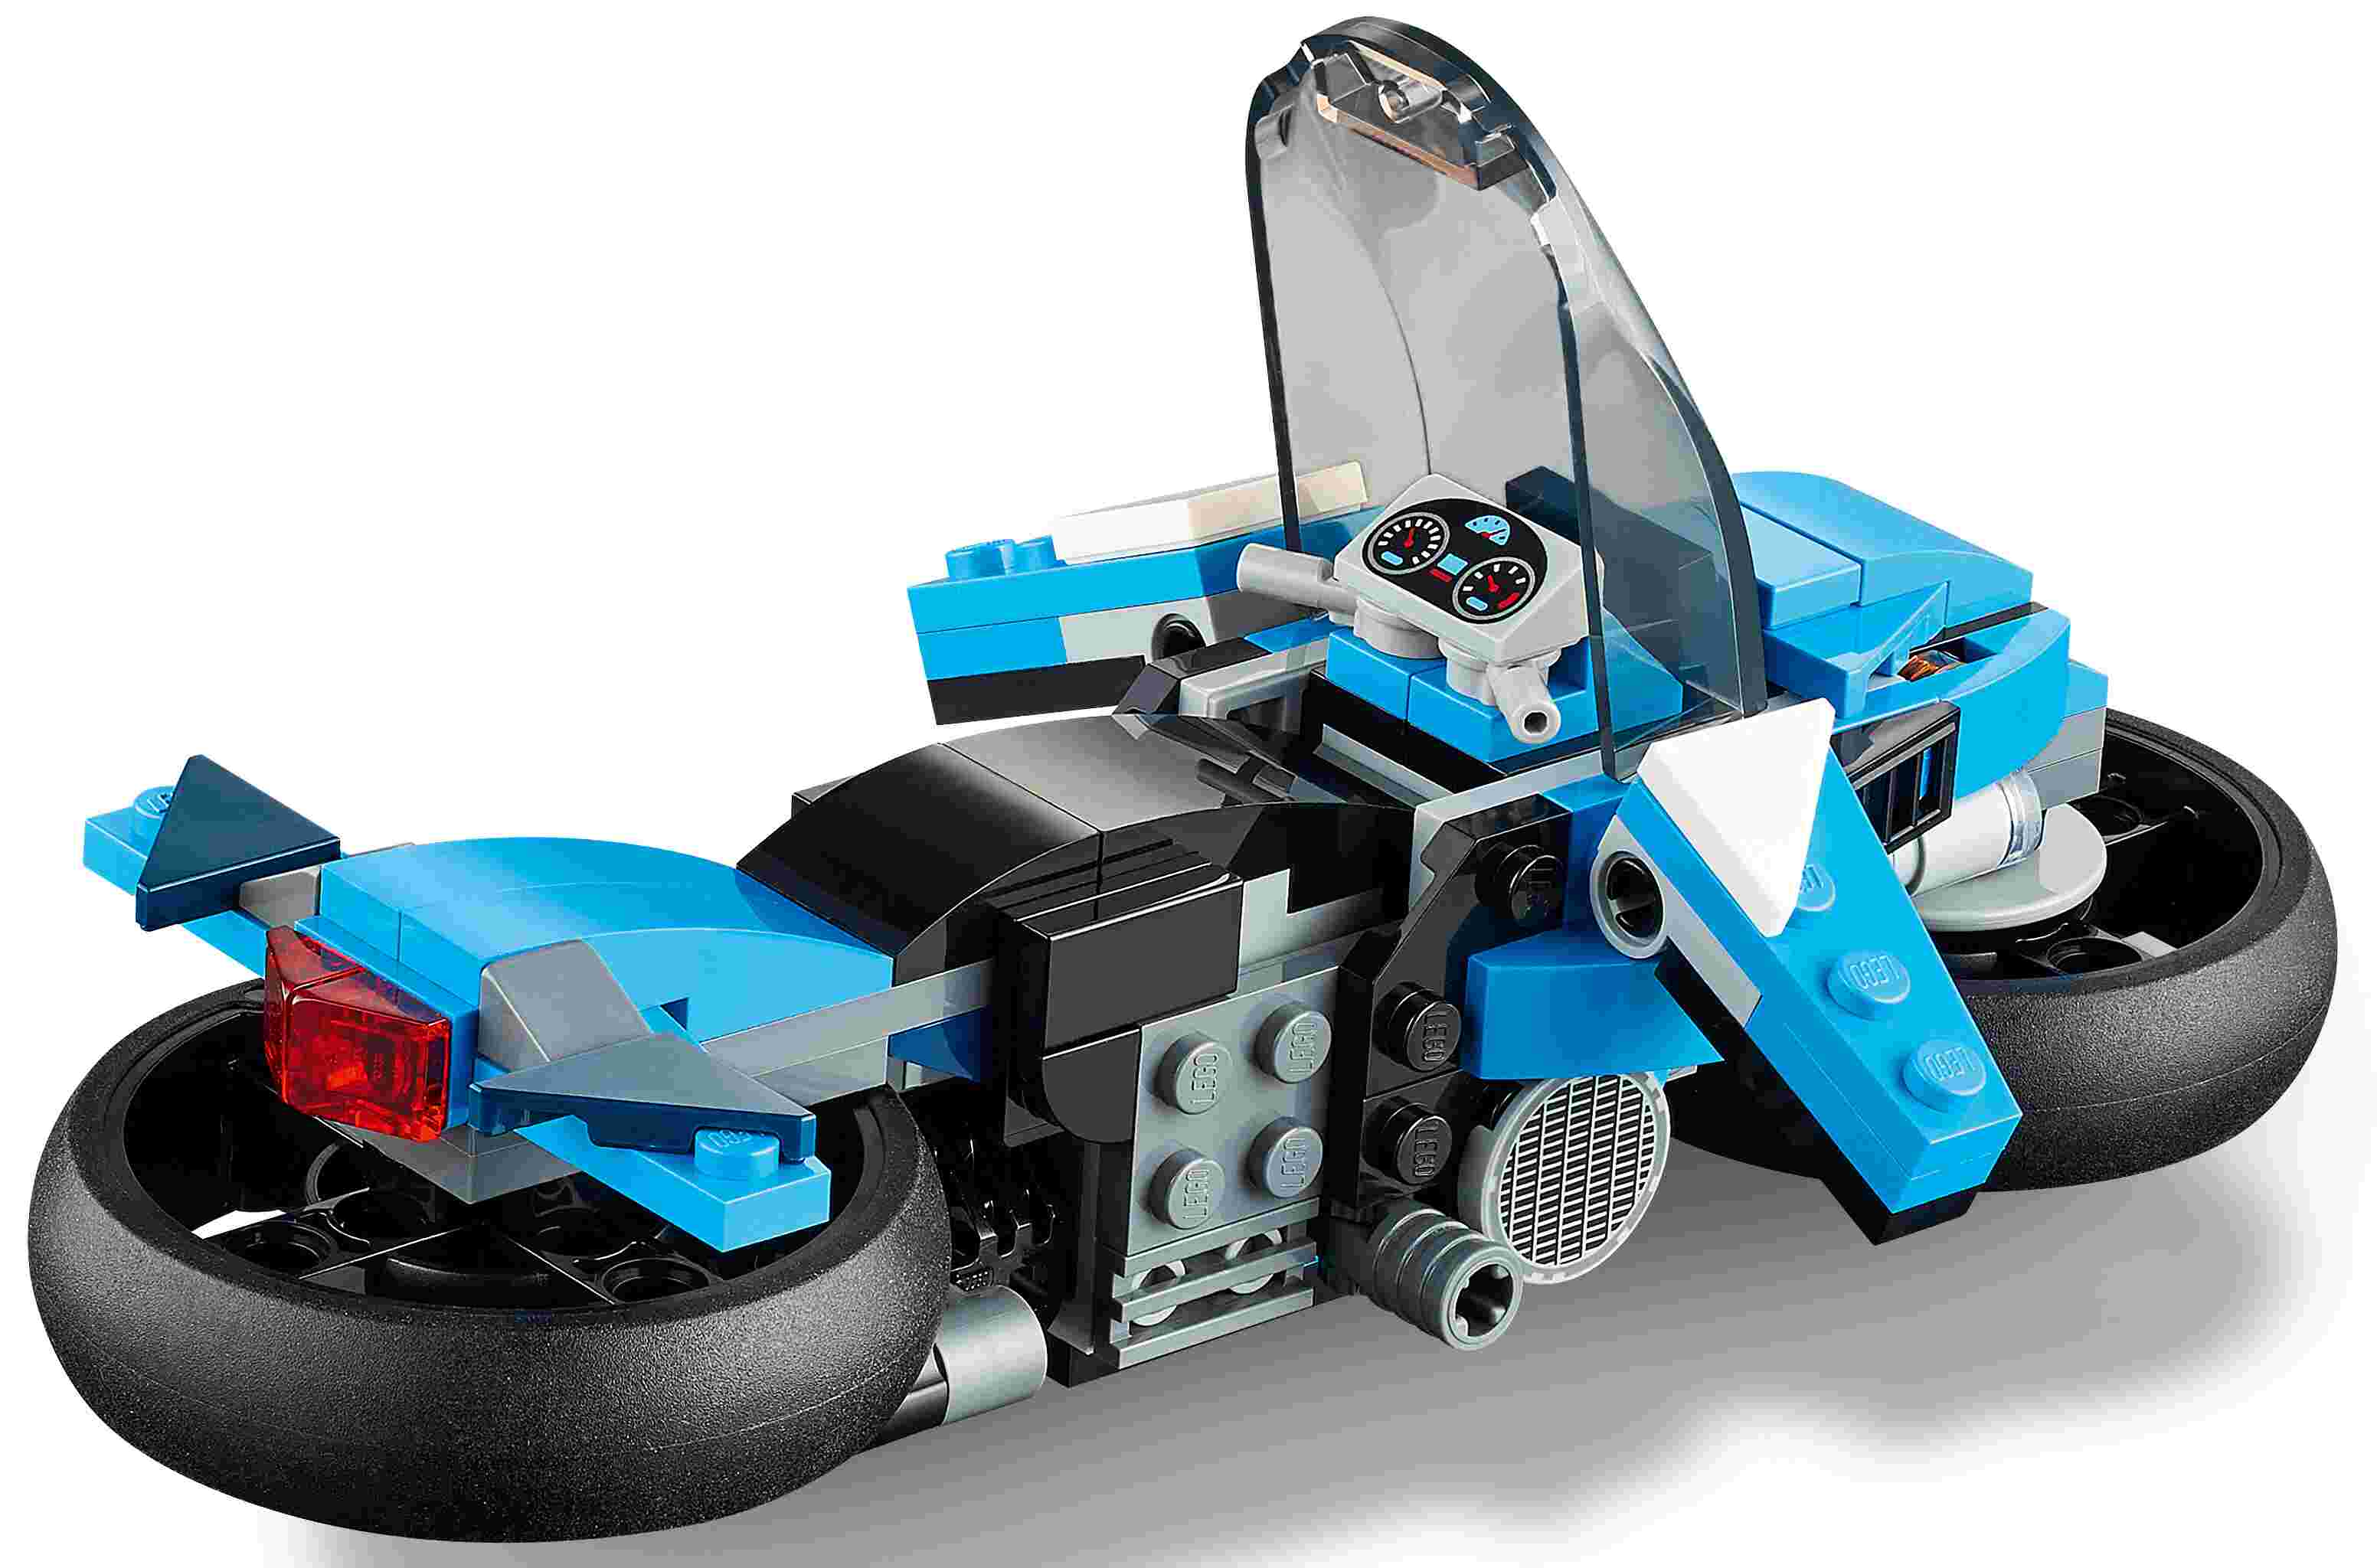 LEGO 31114 Creator 3-In-1 Geländemotorrad, klassisches Motorrad mit Hoverbike